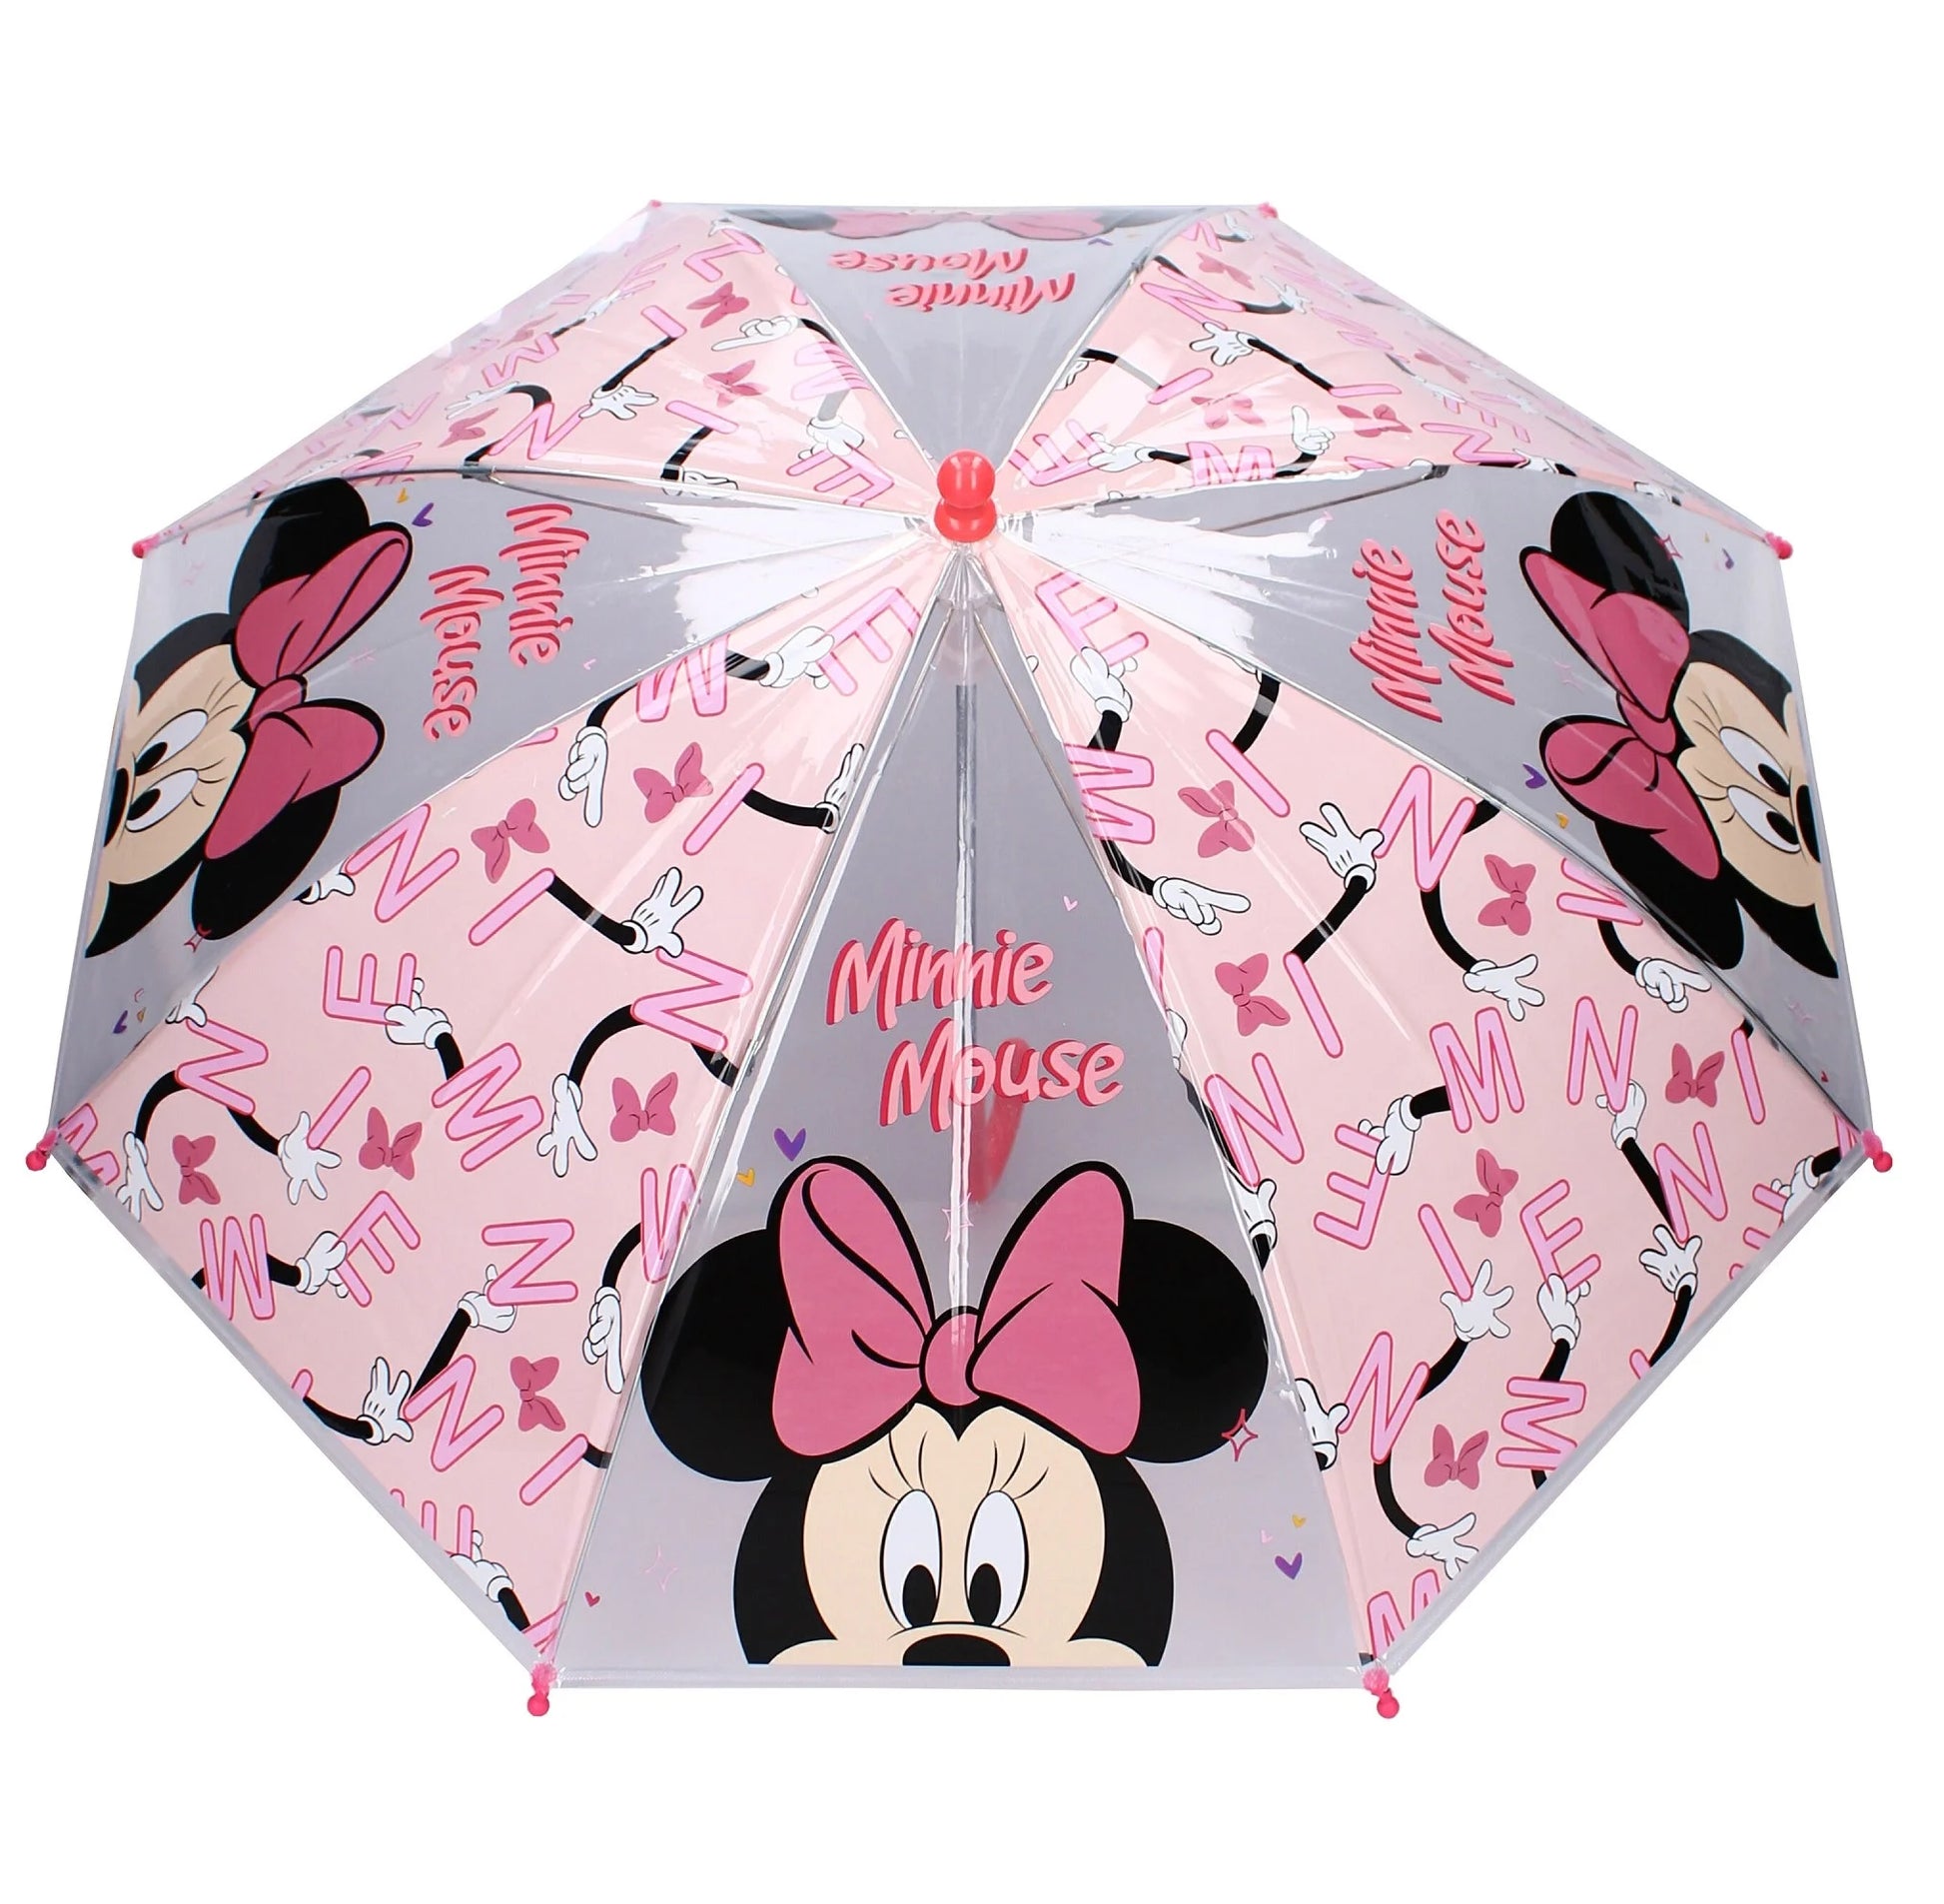 Een gemakkelijk te hanteren, lichtgewicht paraplu met een schattige Minnie Mouse print uit de “Sunny Days Ahead” collectie, ideaal voor kinderen om zelf te openen en te sluiten.